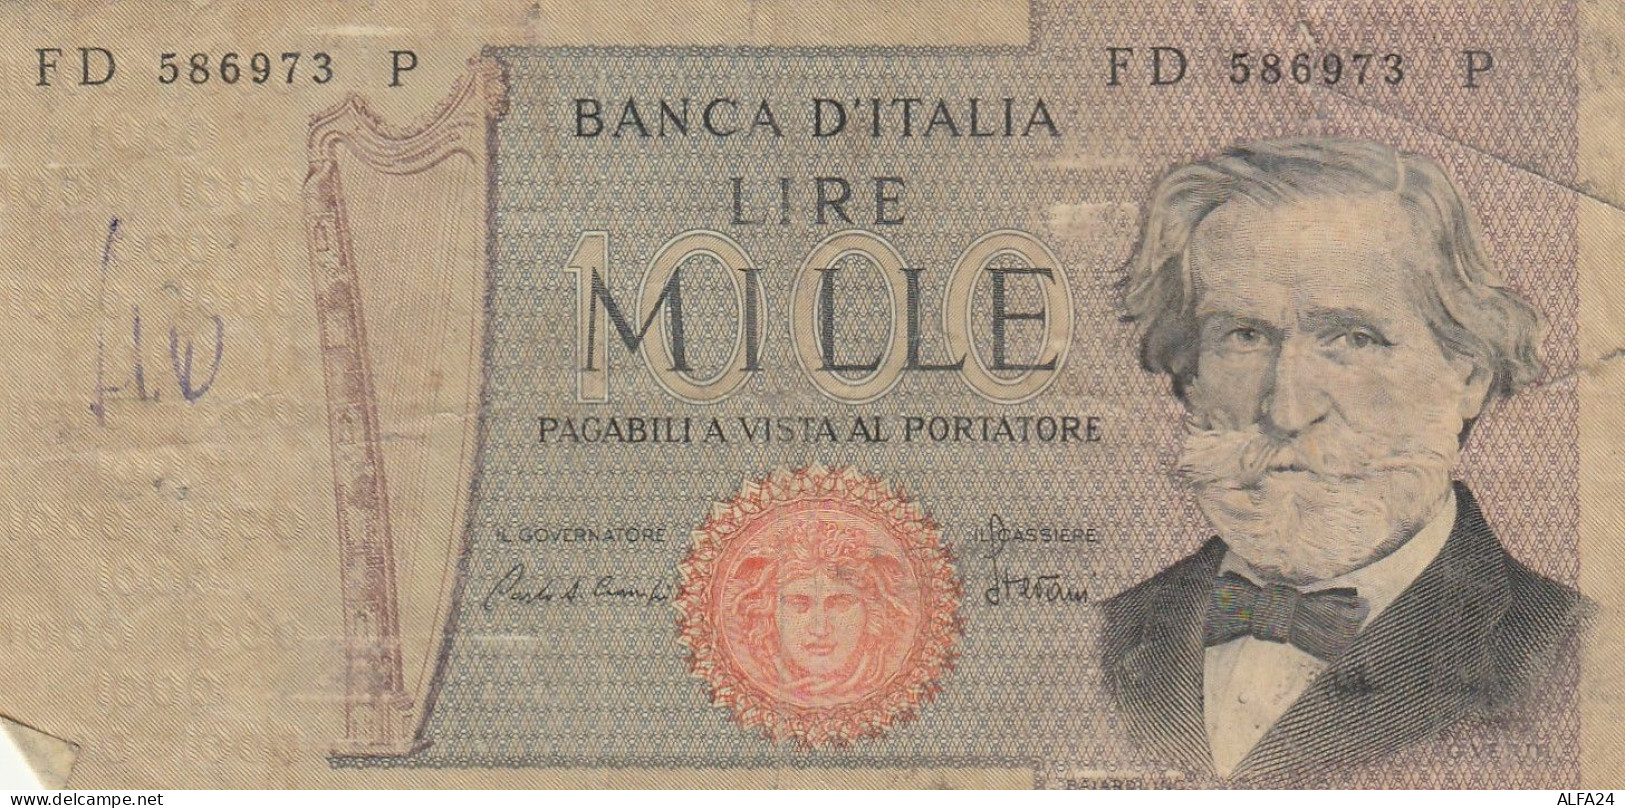 BANCONOTA ITALIA 1000 LIRE VERDI VF (Z1508 - 1000 Lire